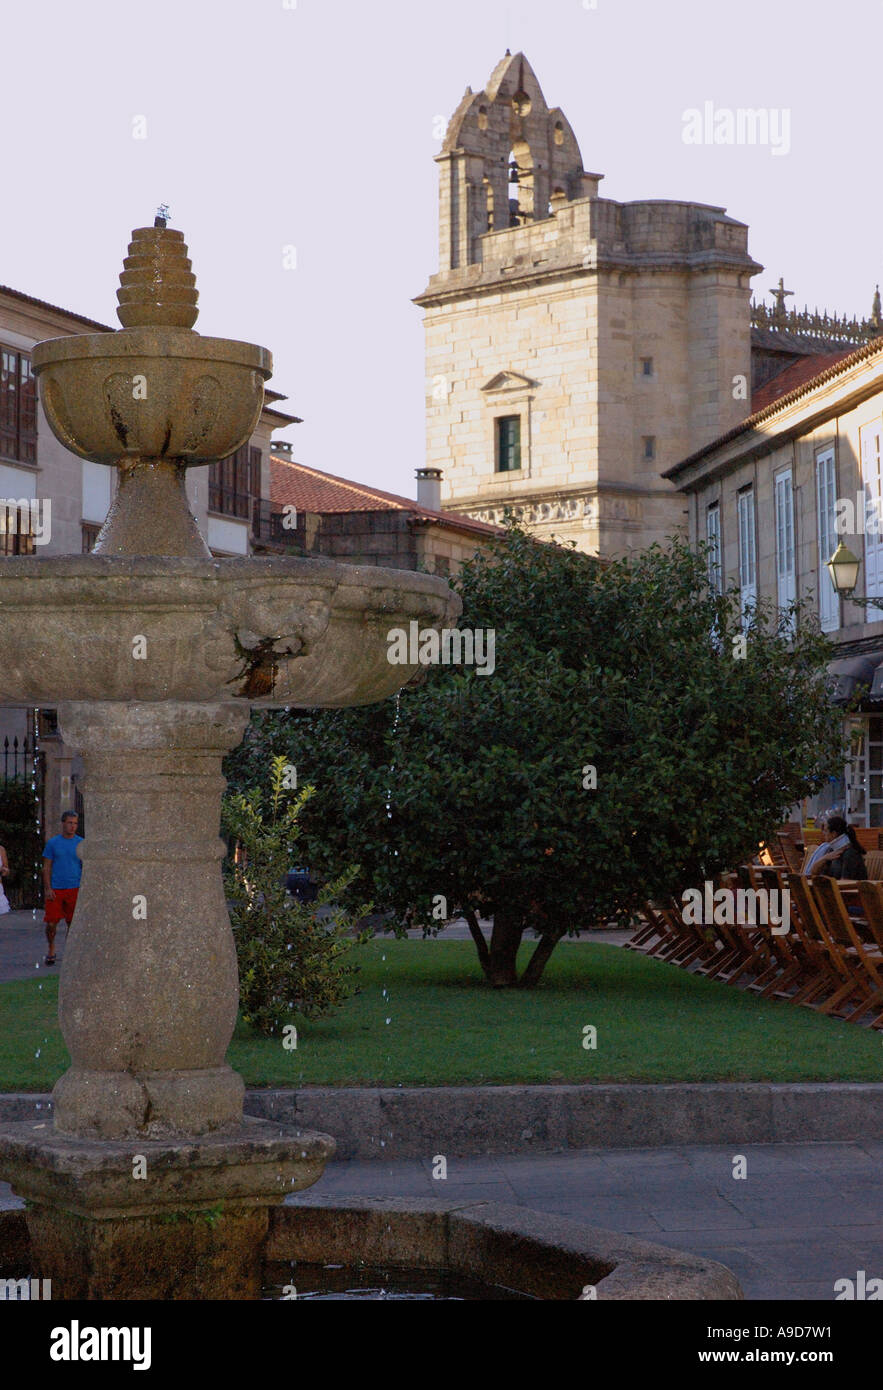 Blick auf einen kleinen quadratischen Brunnen und Kirche im Zentrum alten Stadt Pontevedra Galizien Spanien iberischen Halbinsel España Europa Stockfoto